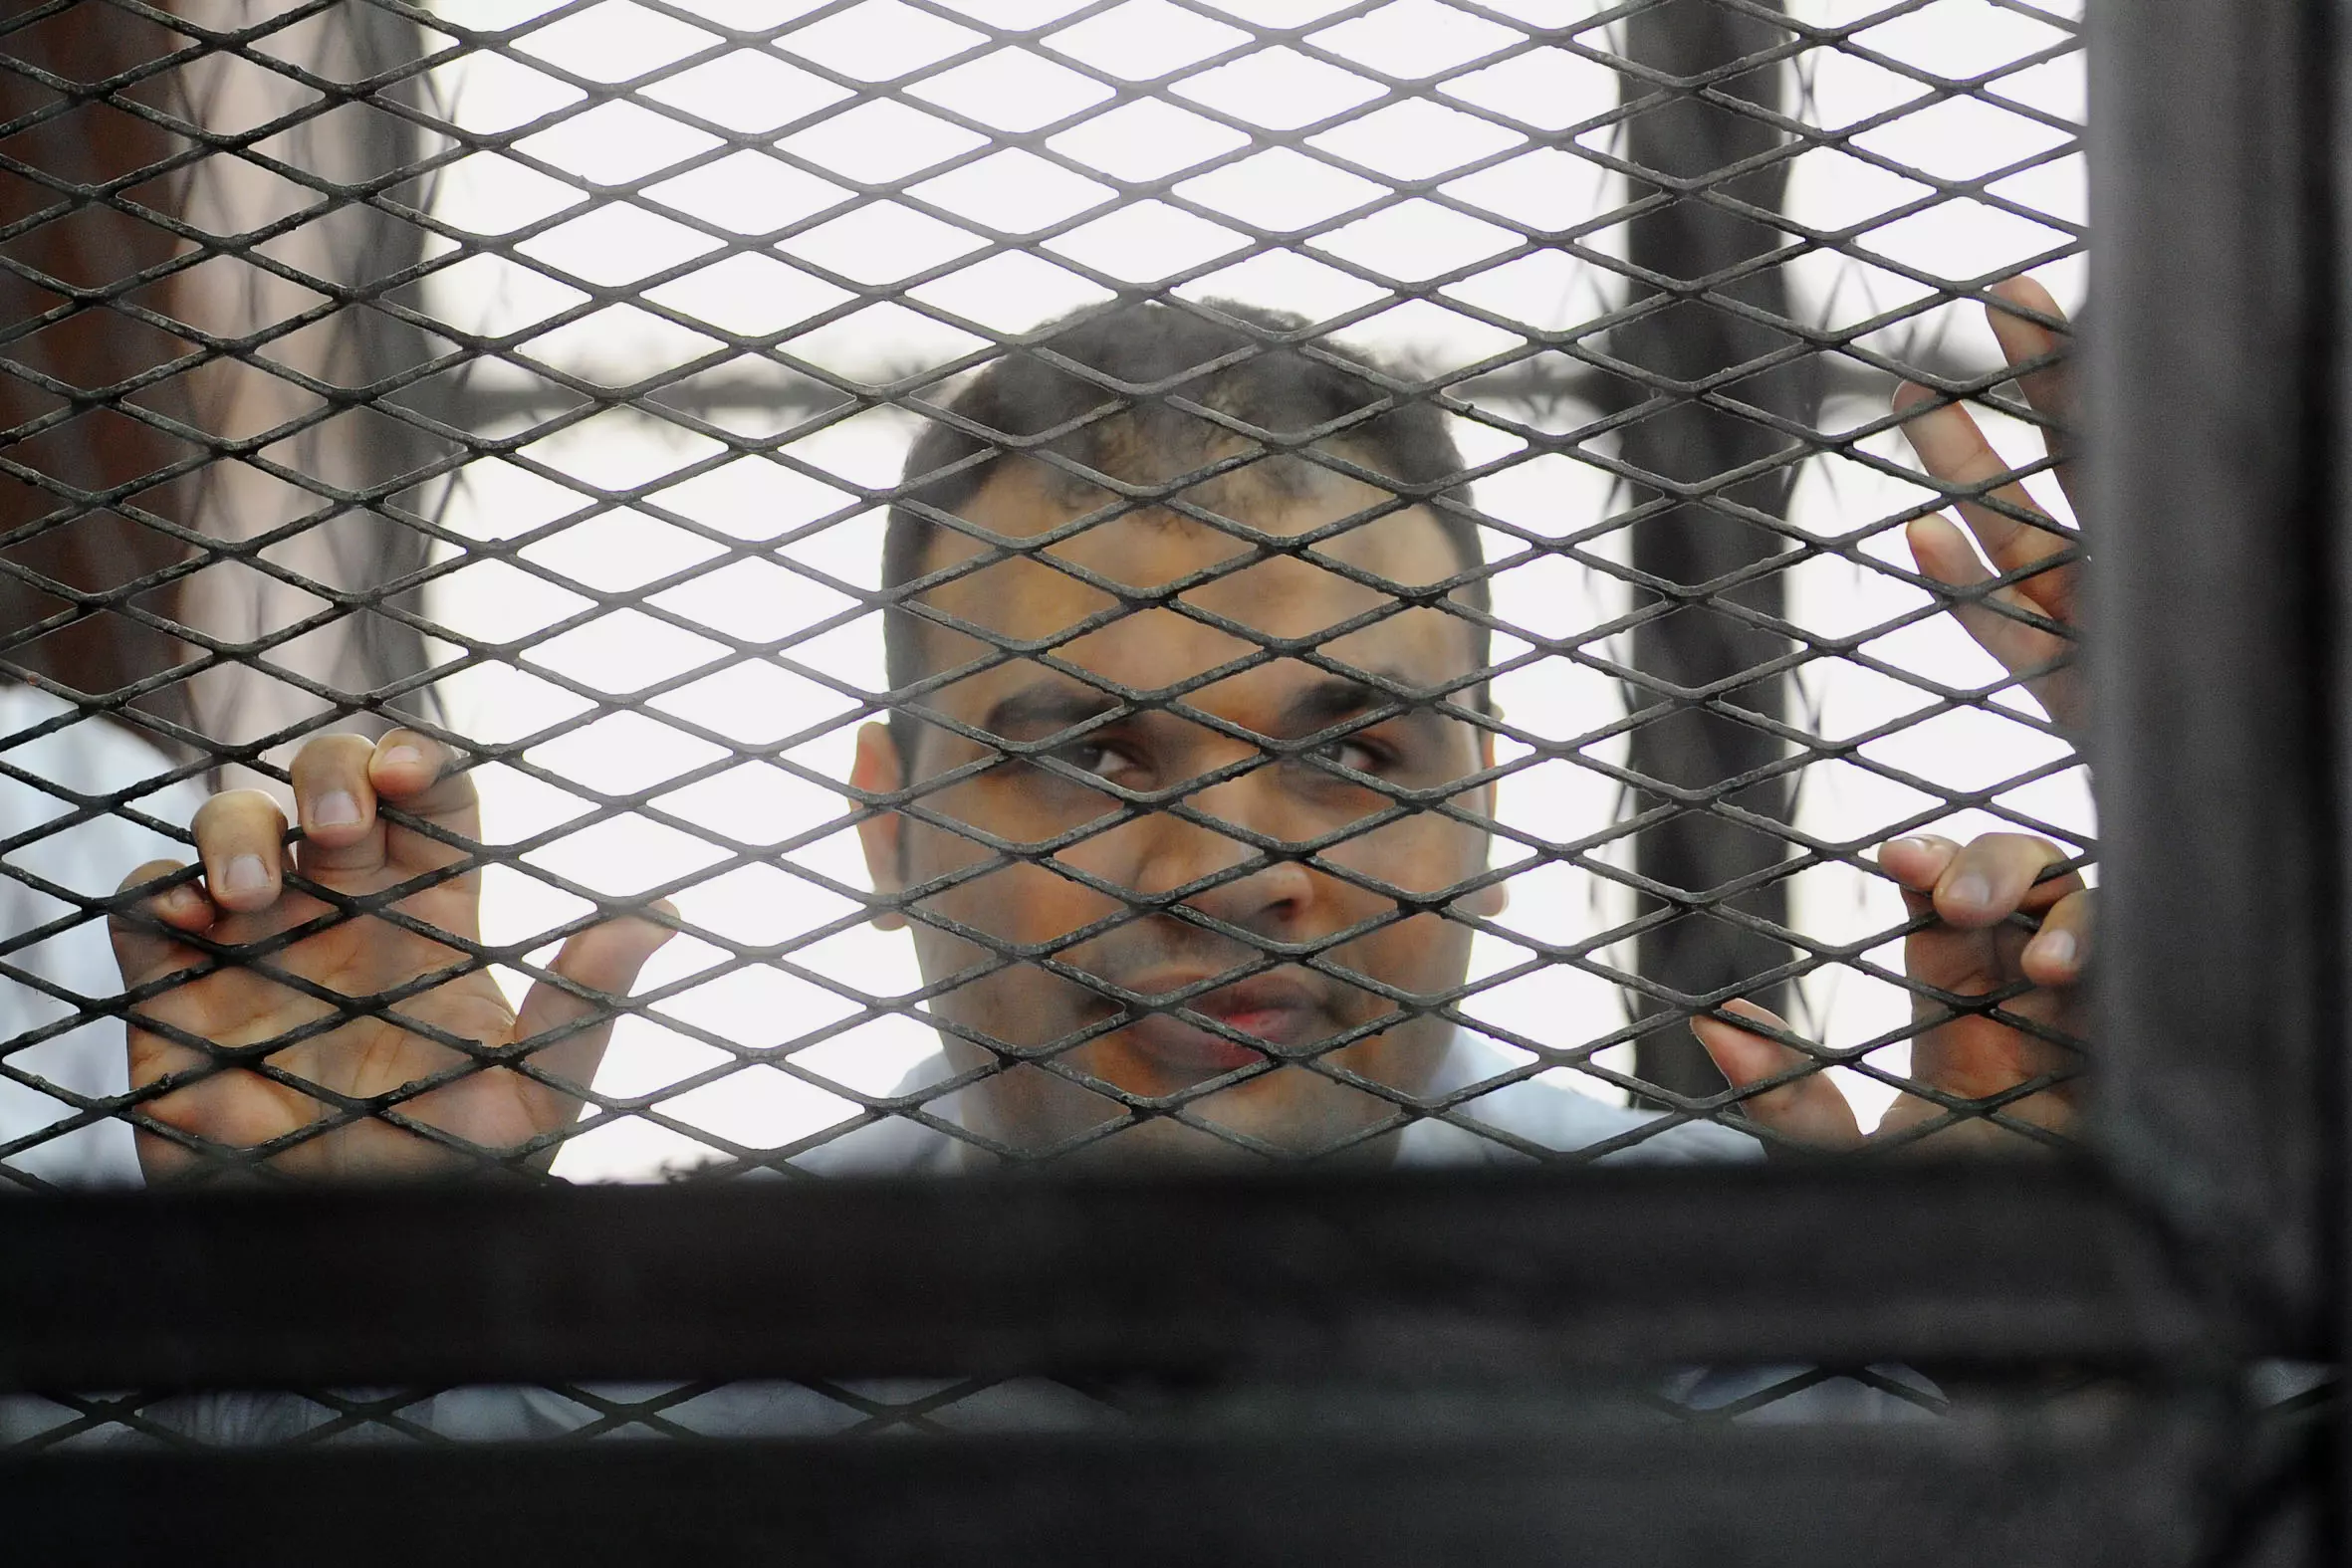 צלם אל-ג'זירה, מוחמד בדר, אזרח בריטי המואשם בסיוע לטרור, מופיע בבית המשפט בקהיר